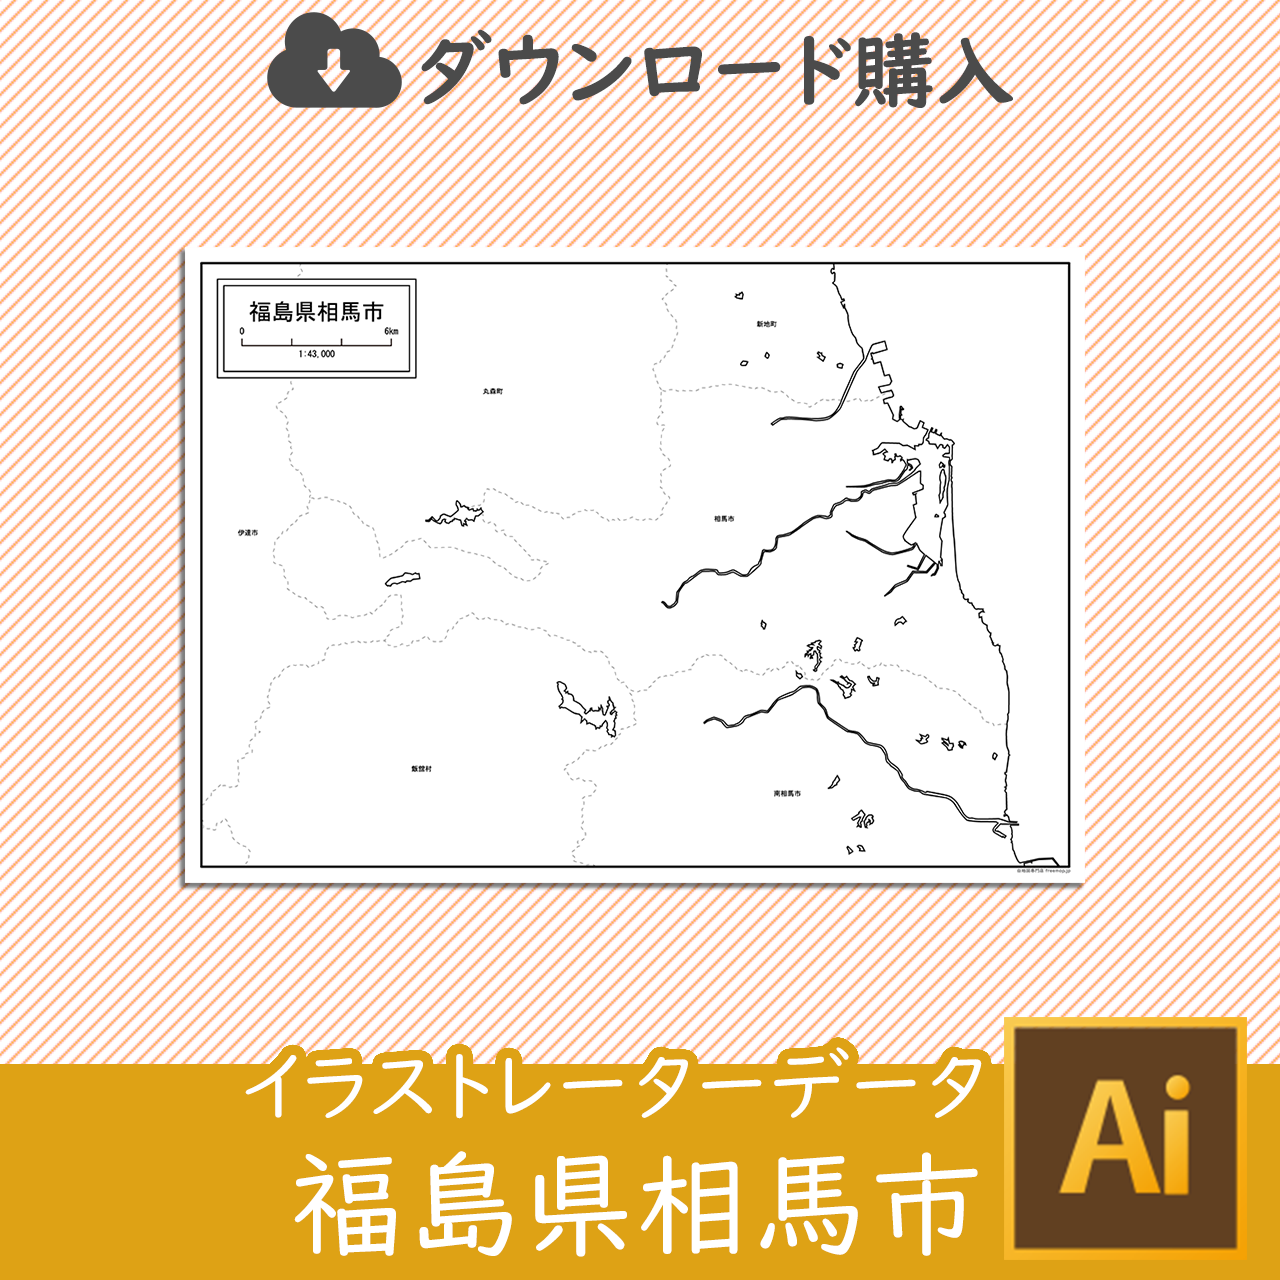 相馬市のaiデータのサムネイル画像